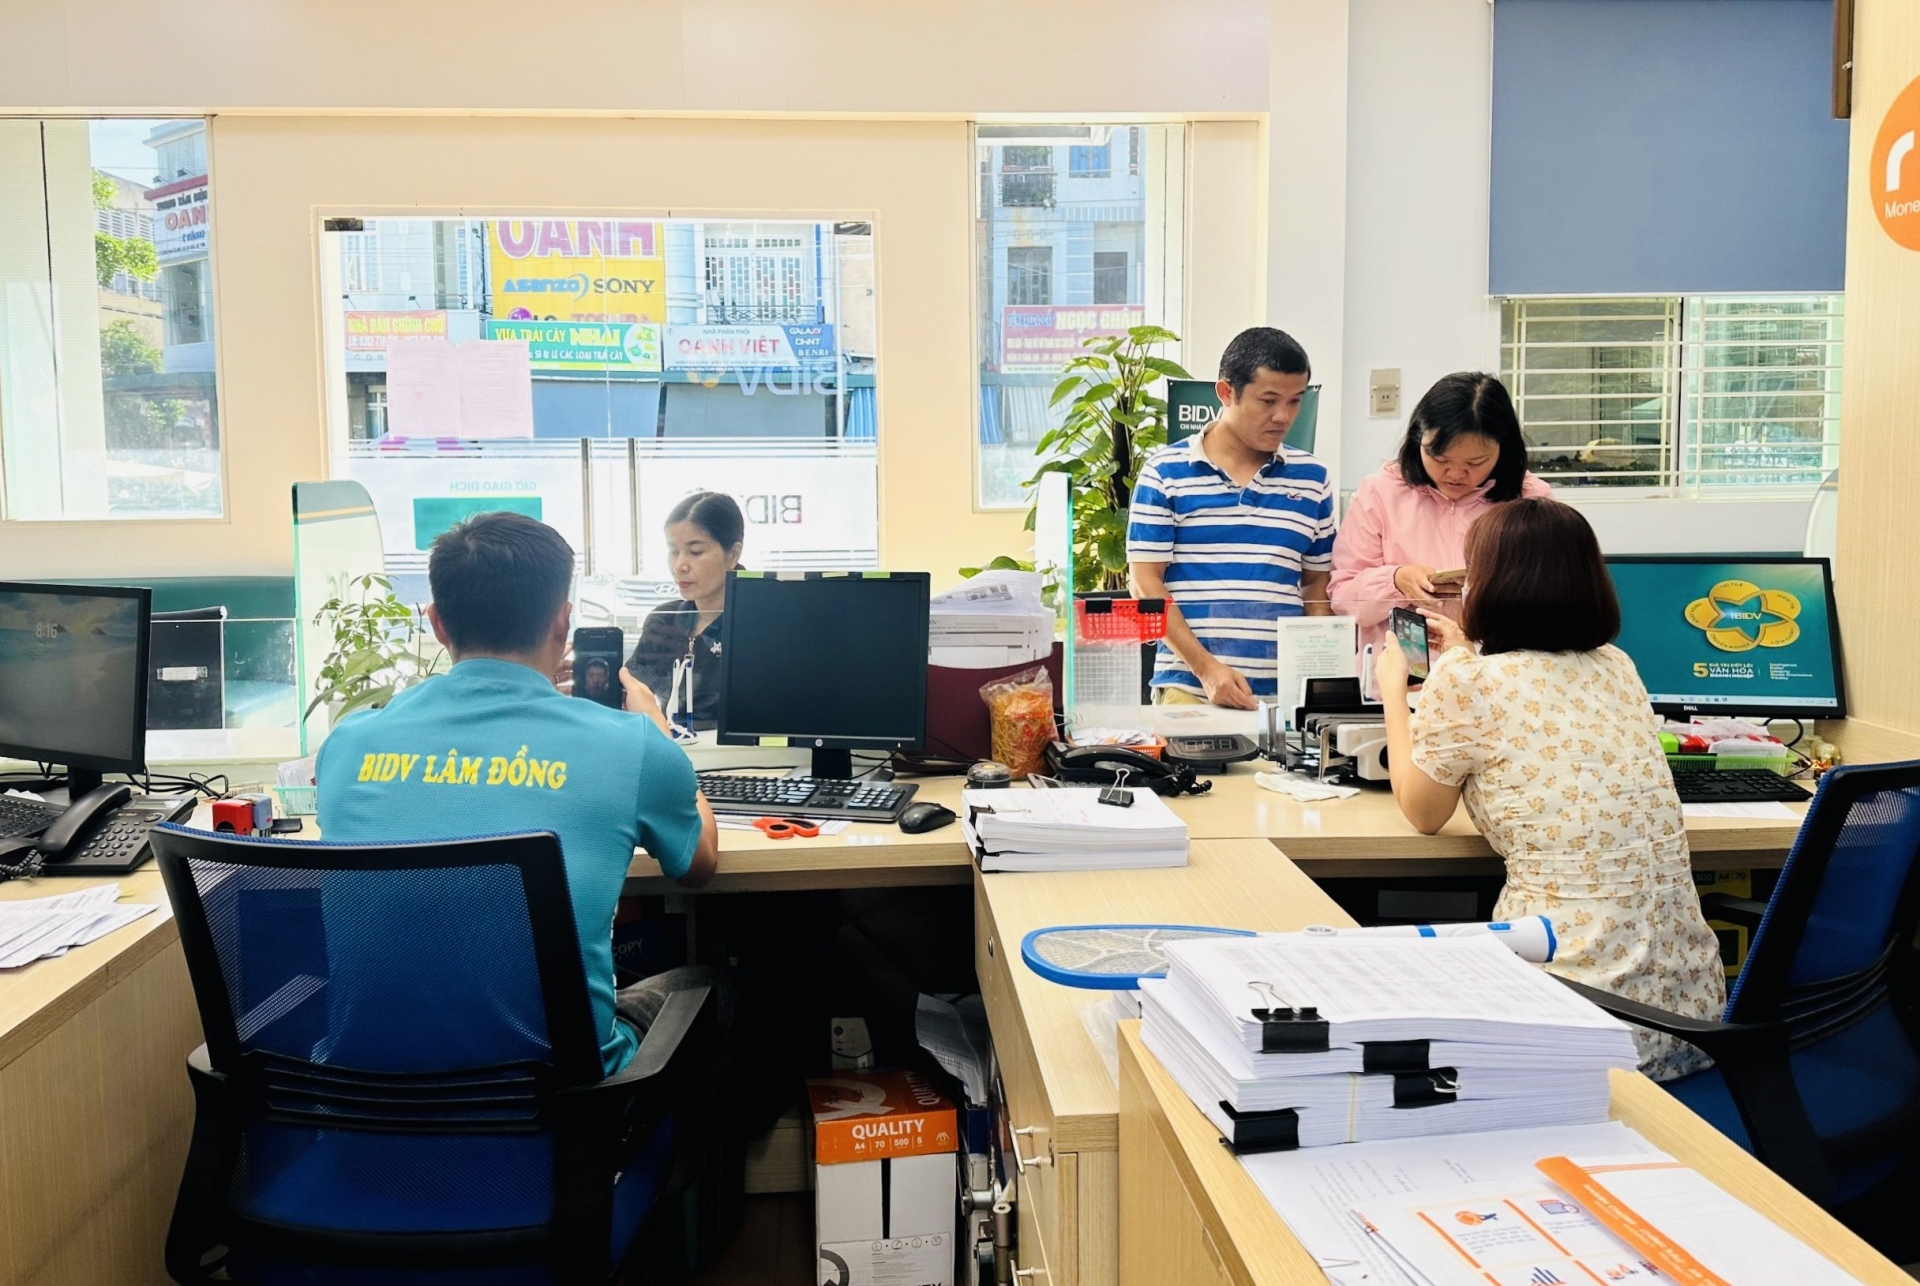 BIDV Lâm Đồng làm việc xuyên thứ Bảy (29/6, 6/7) và Chủ Nhật (30/6,7/7) để hỗ trợ khách hàng xác thực sinh trắc học tại quầy